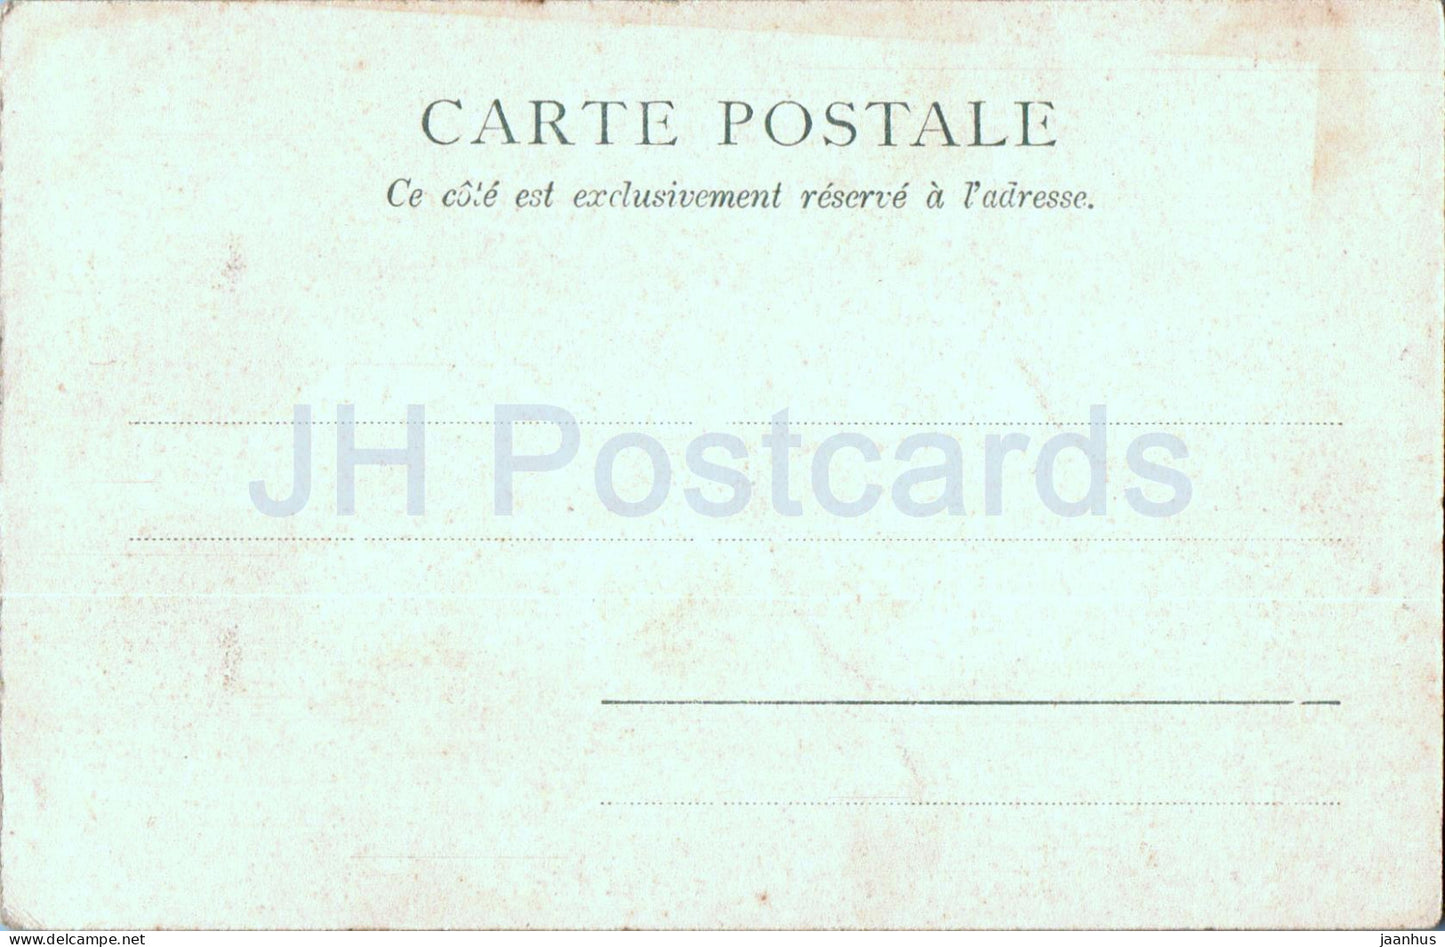 Caen - Place St Pierre Hotel de Valois ou d'Ecaville - alte Postkarte - Frankreich - unbenutzt 